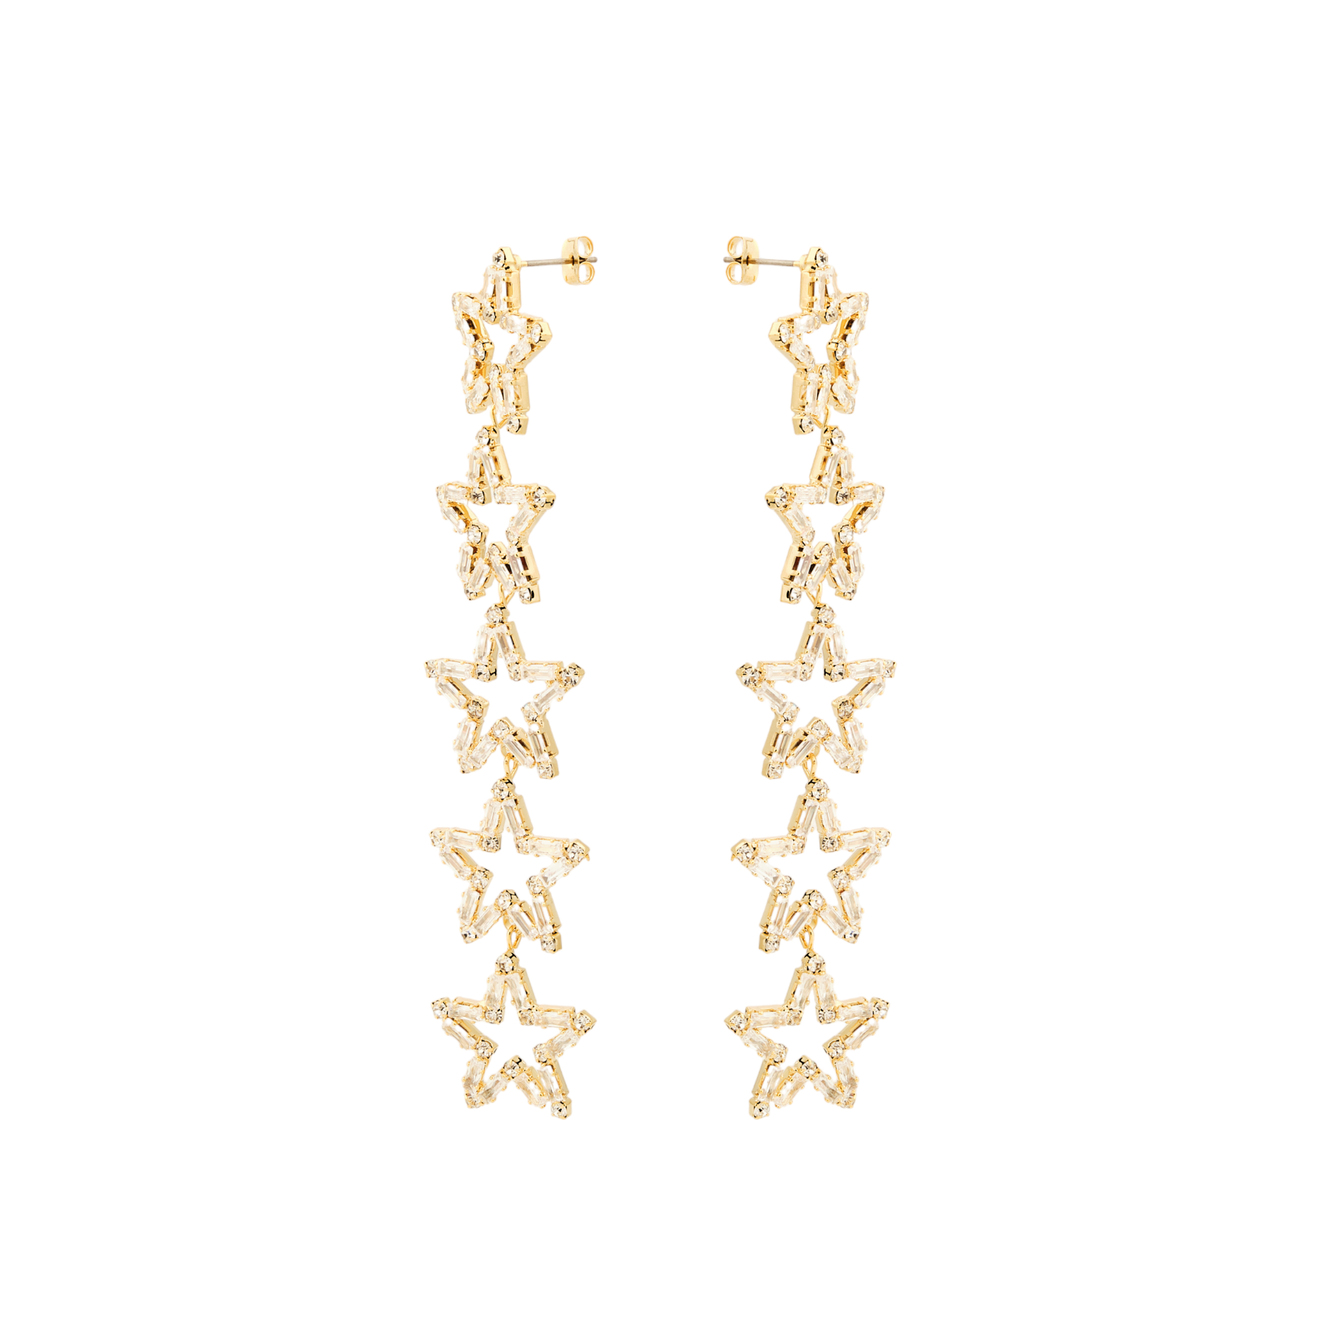 Herald Percy Золотистые длинные серьги с звездами с кристаллами herald percy золотистые изогнутые серьги с кристаллами